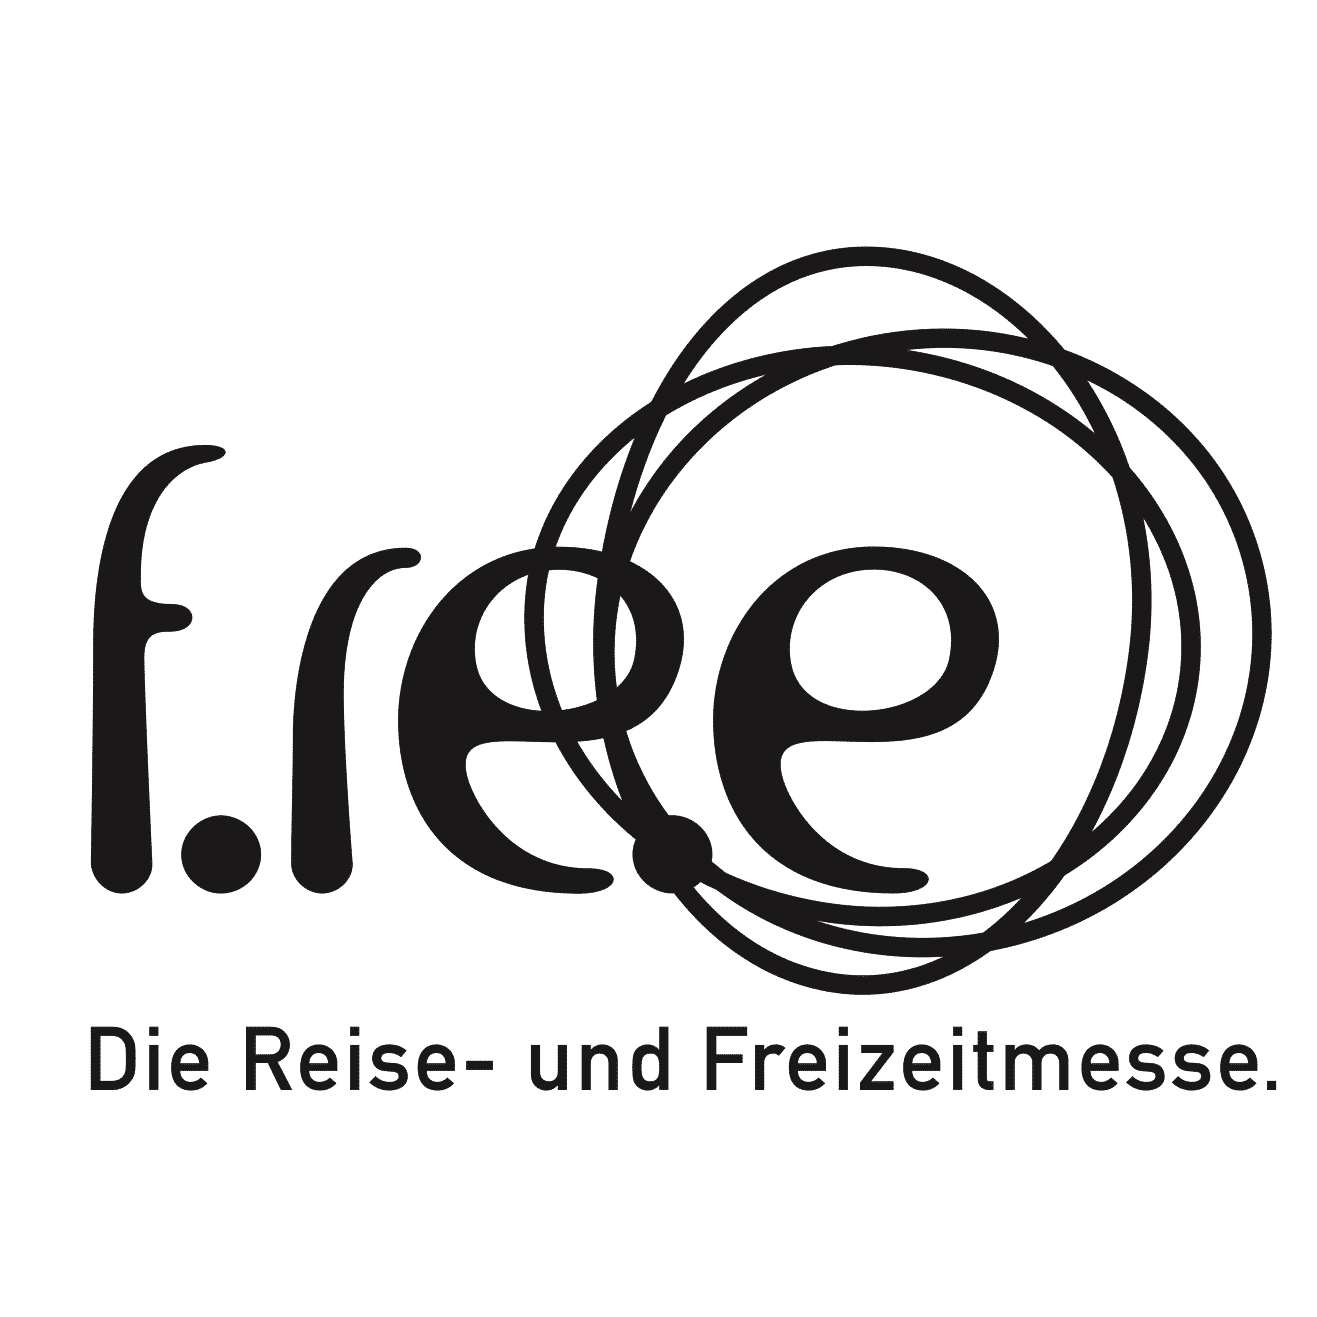 Free 2019 Logo